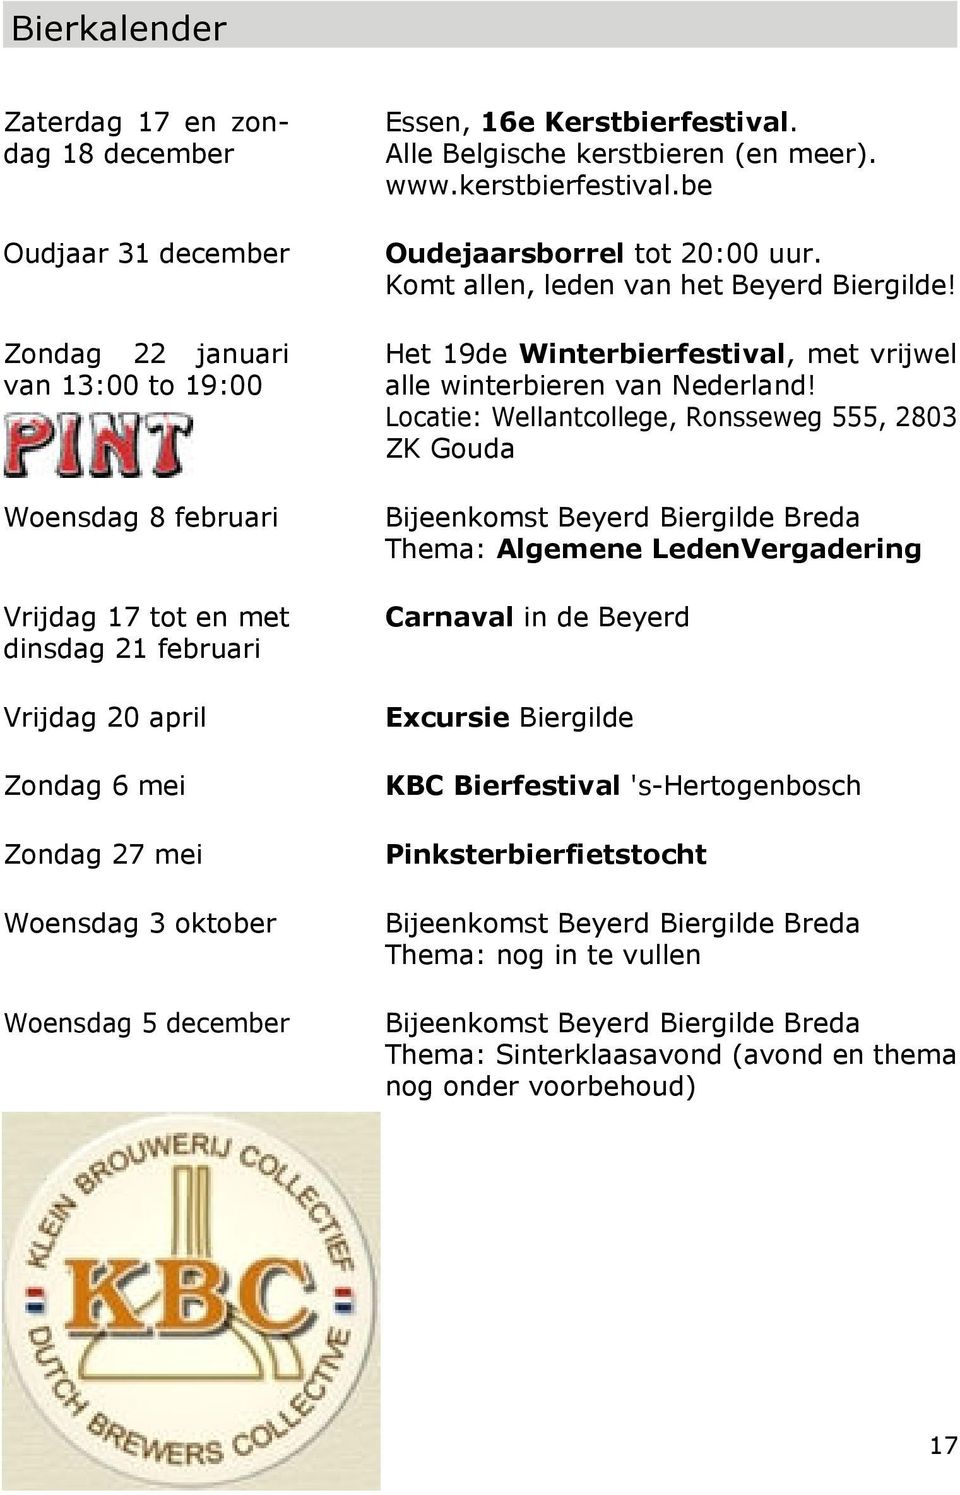 Het 19de Winterbierfestival, met vrijwel alle winterbieren van Nederland!